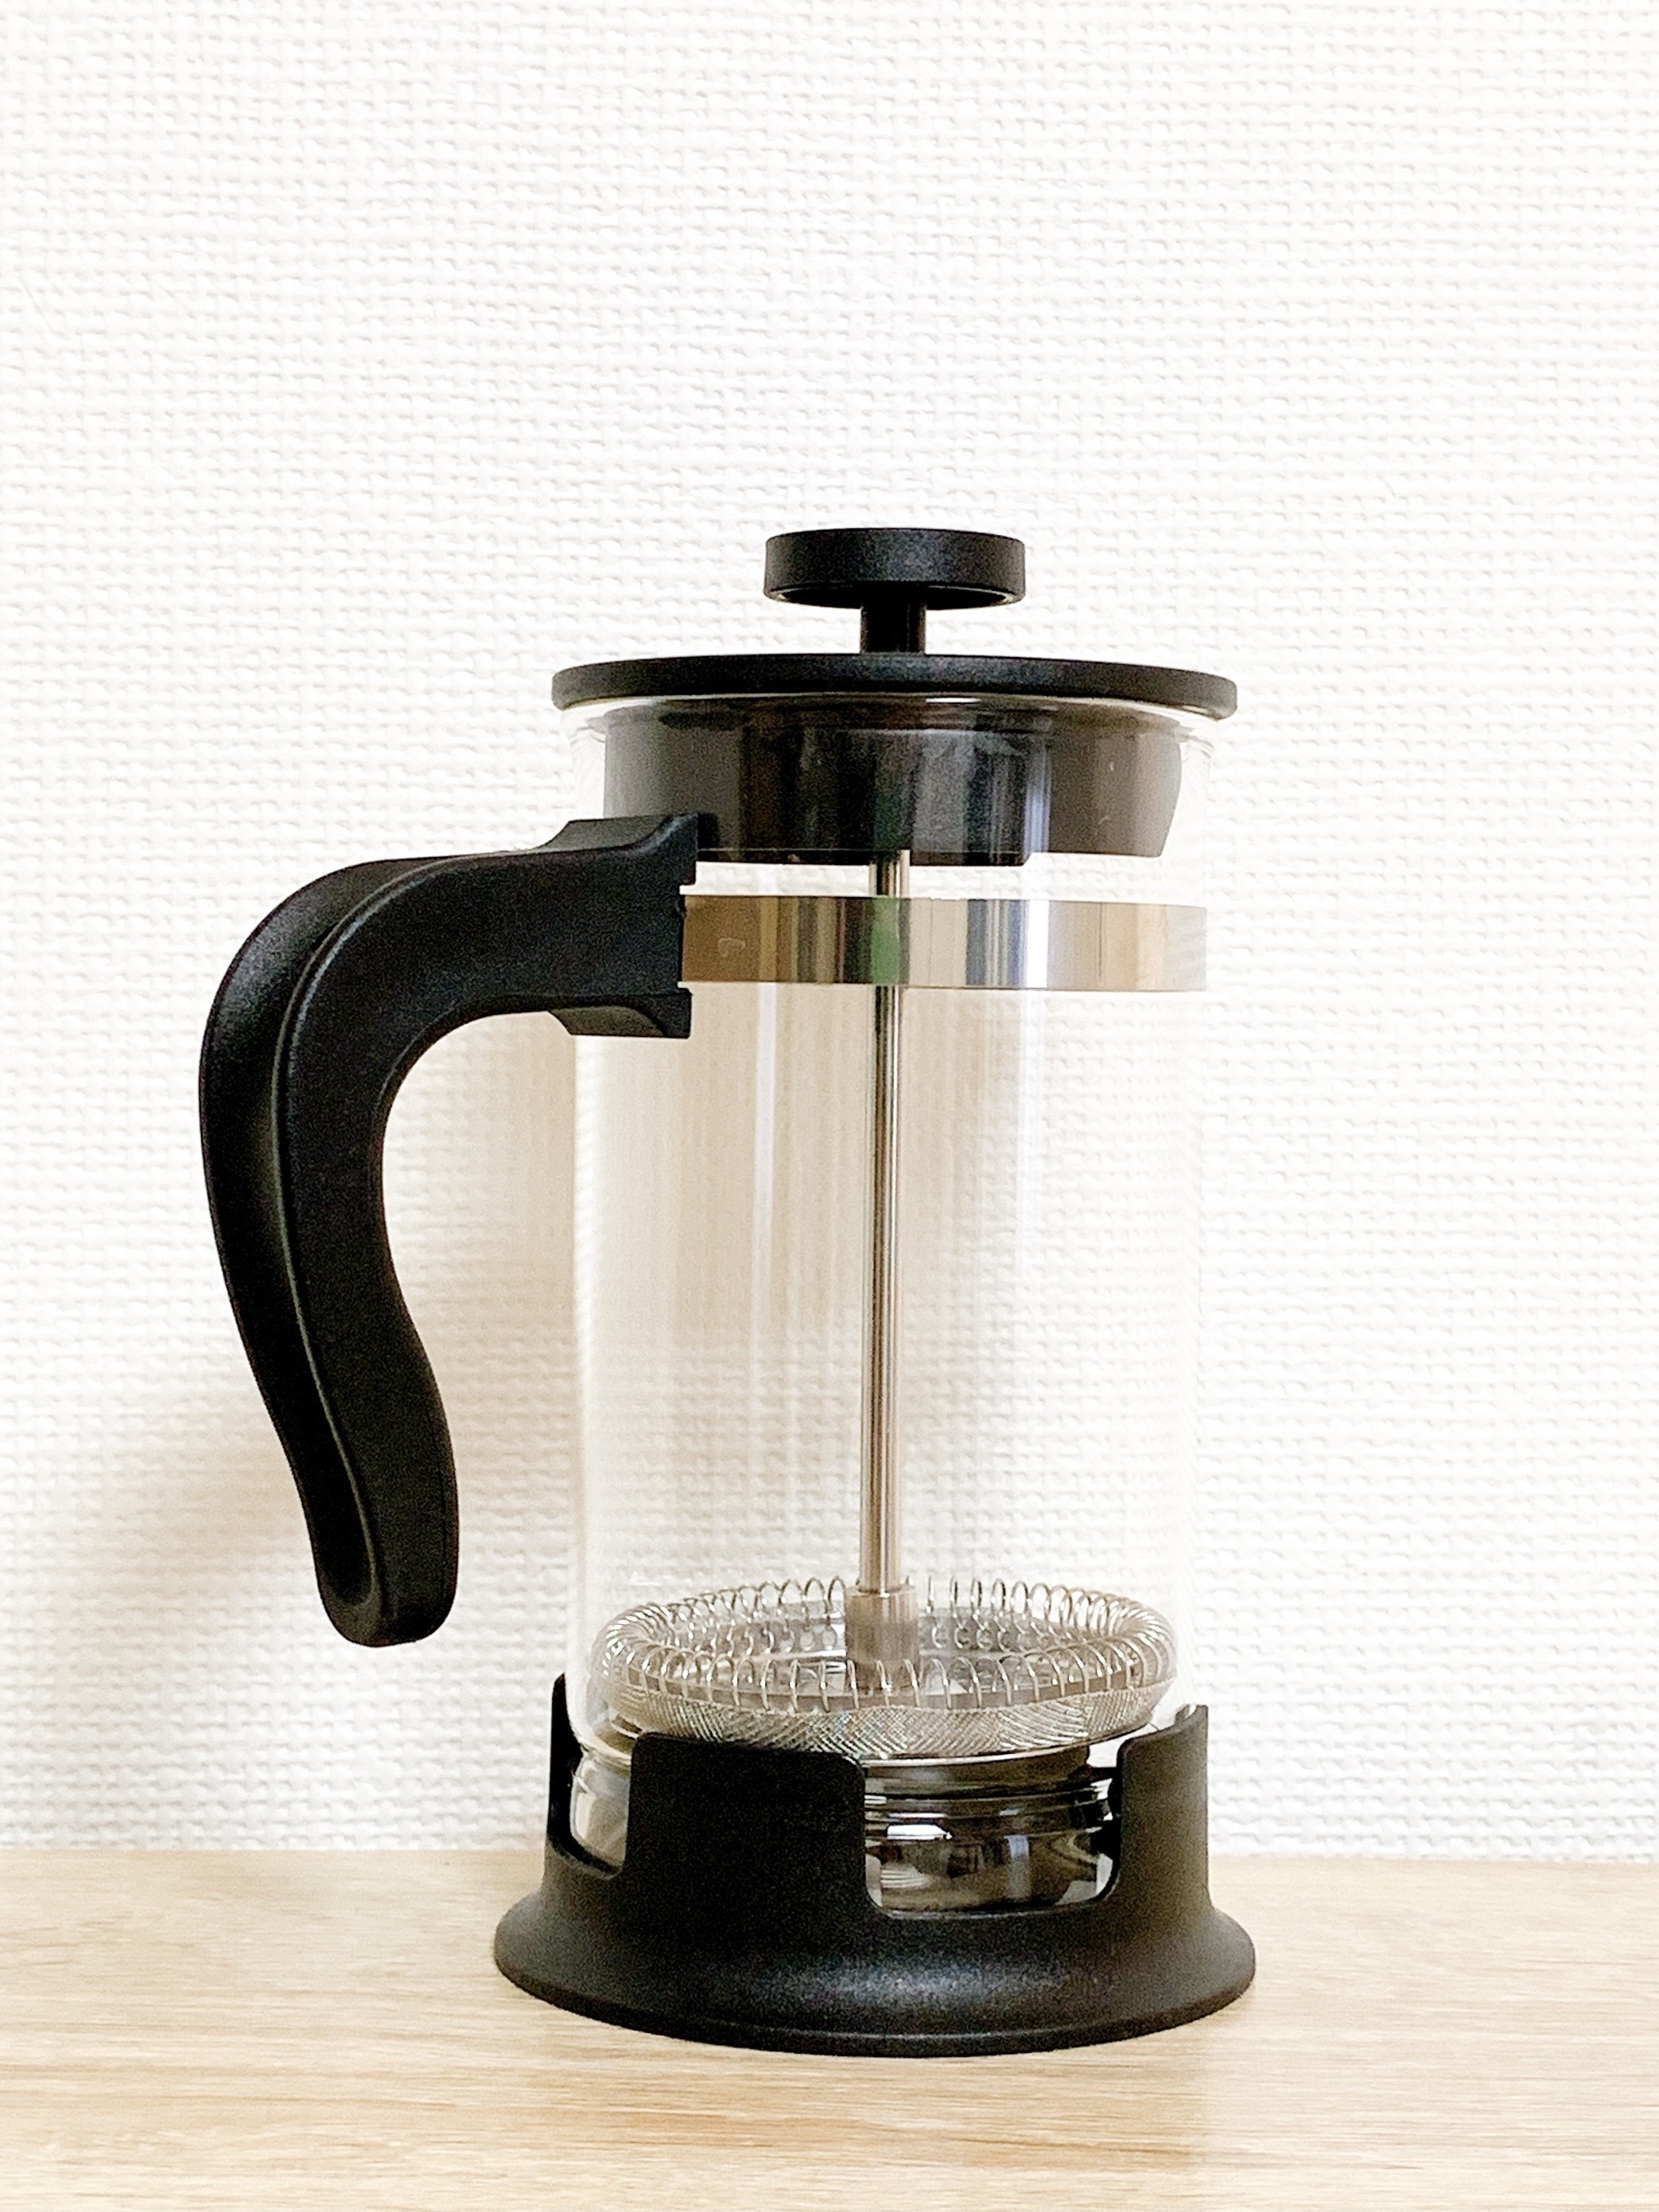 IKEAの人気商品「UPPHETTA ウップヘッタ コーヒー 0.4L」簡単に美味しいコーヒーが作れる便利なキッチングッズ